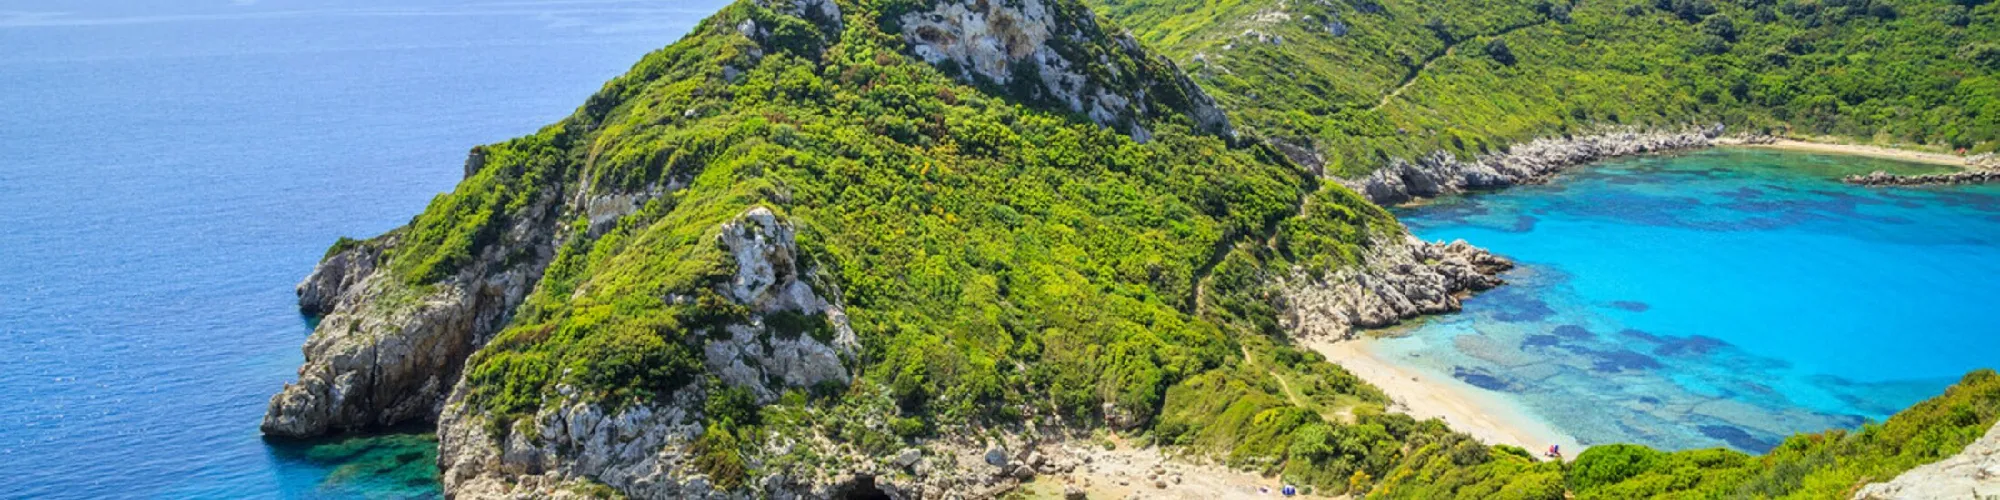 Zeit für Urlaubsgefühle auf Korfu background image